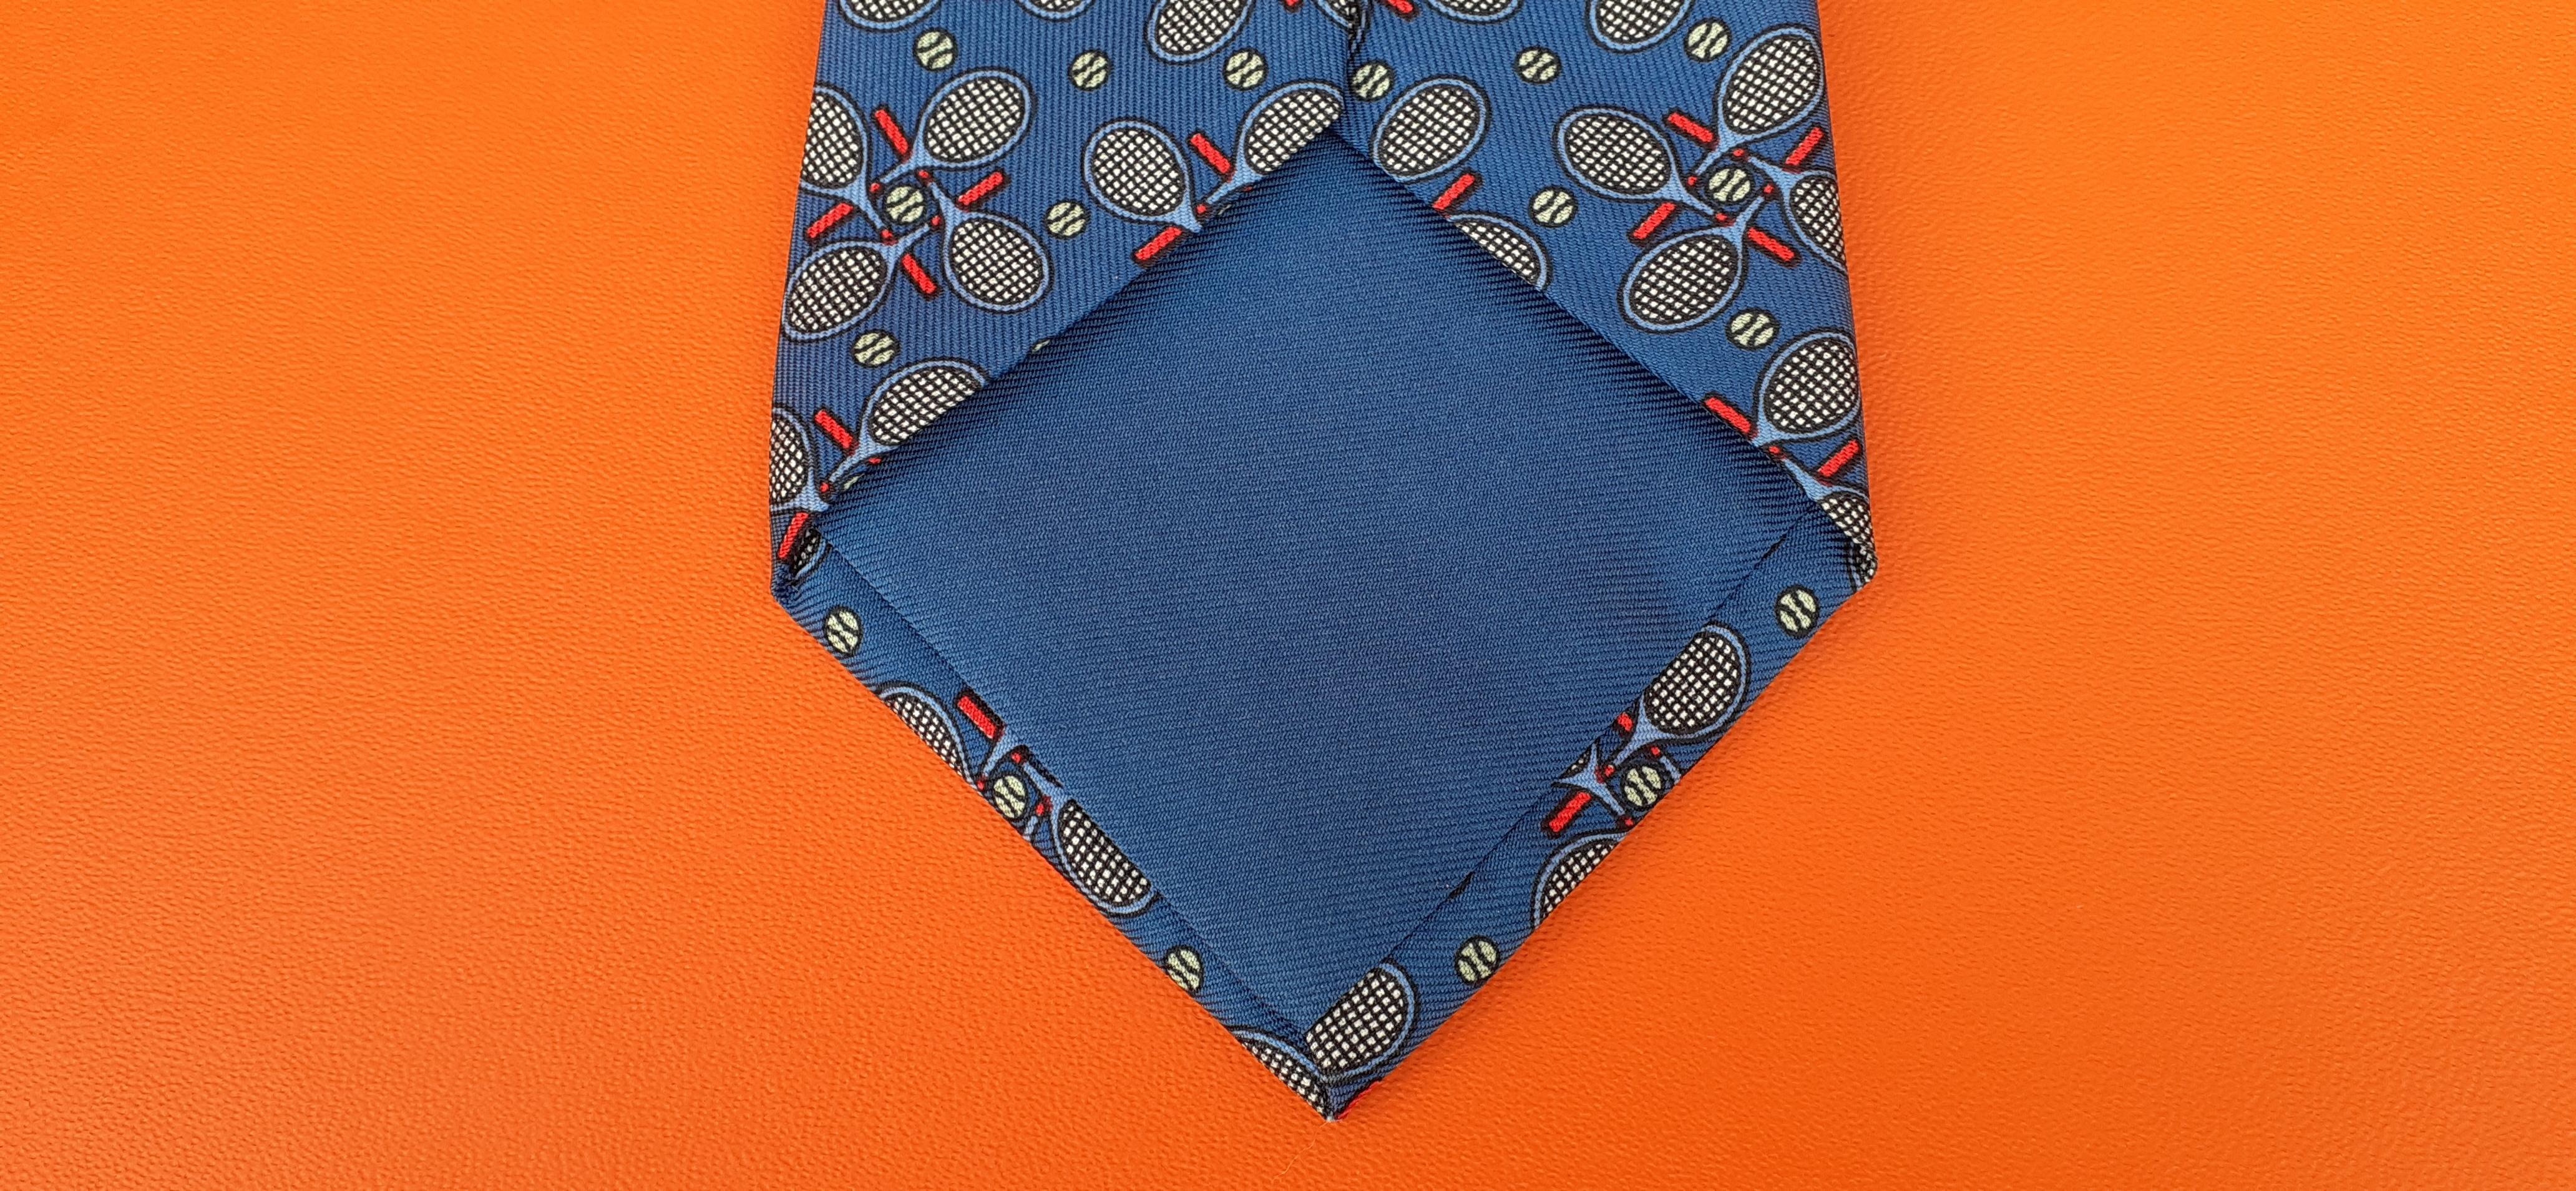 Hermès Silk Tie Tennis Pattern Mint Condition 4